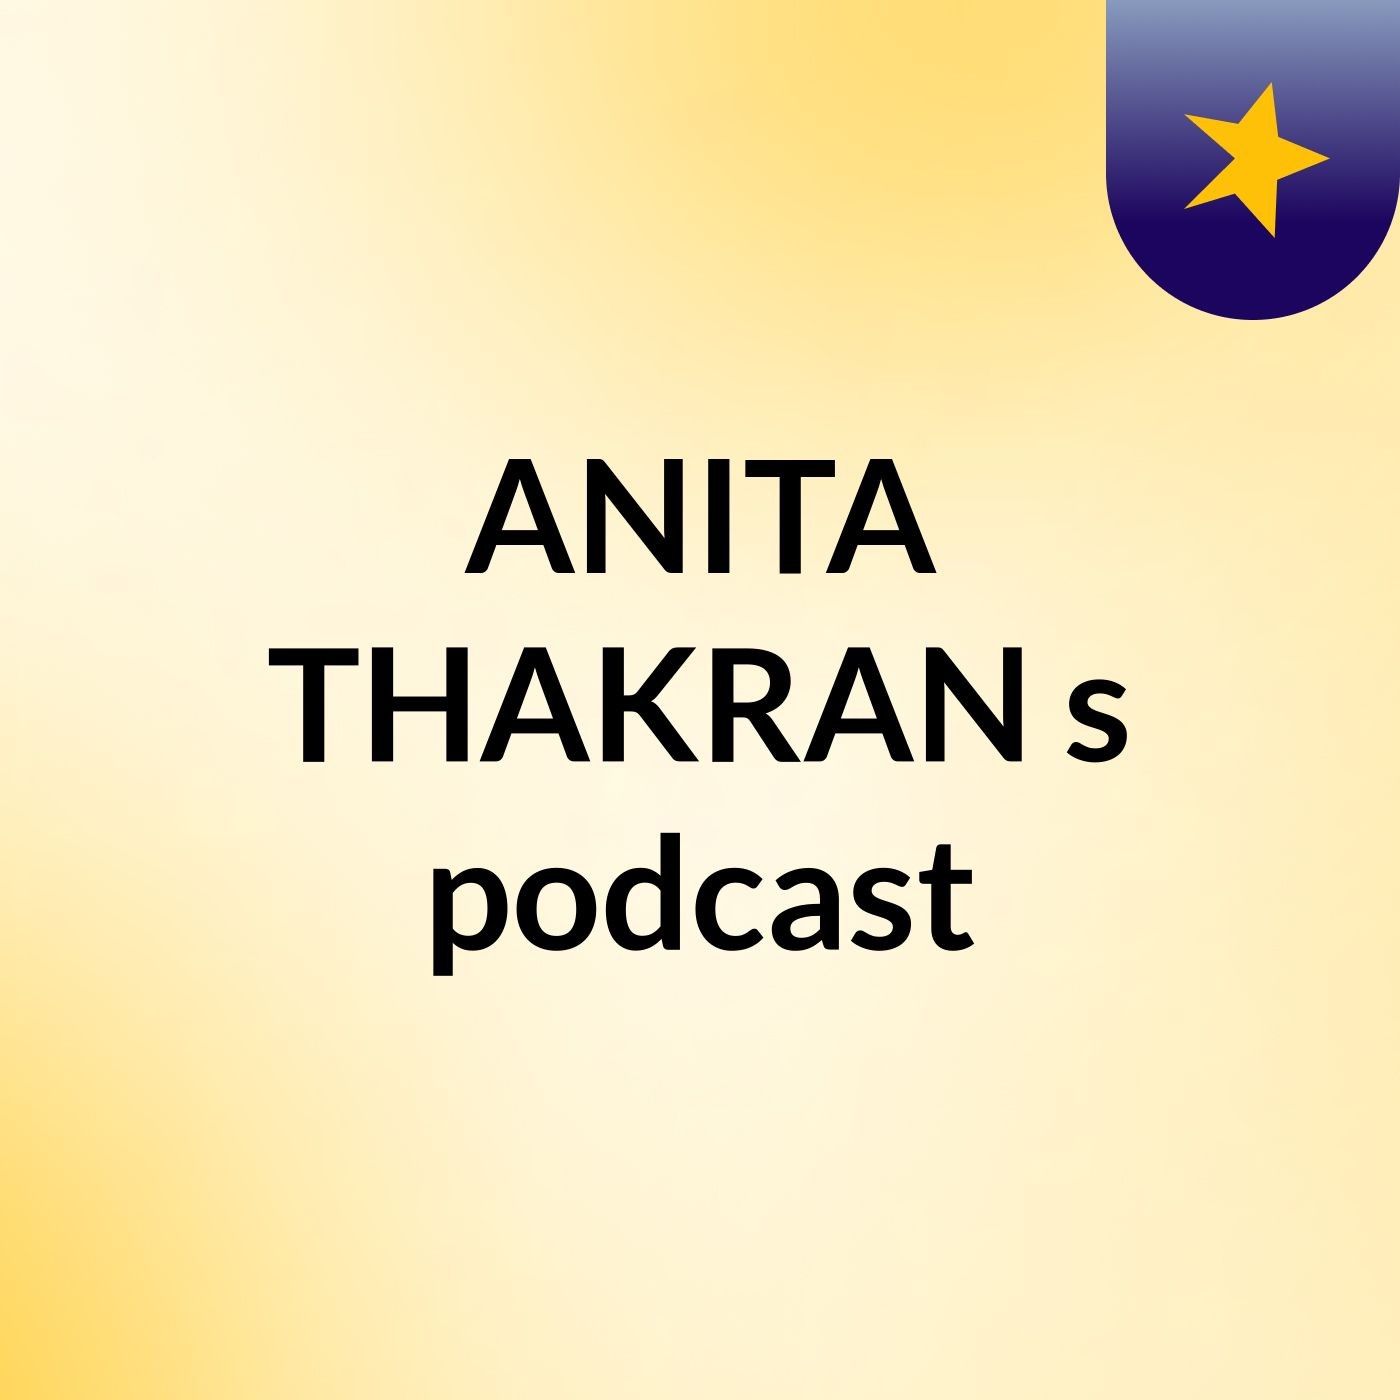 Episode 6 - ANITA THAKRAN's podcast